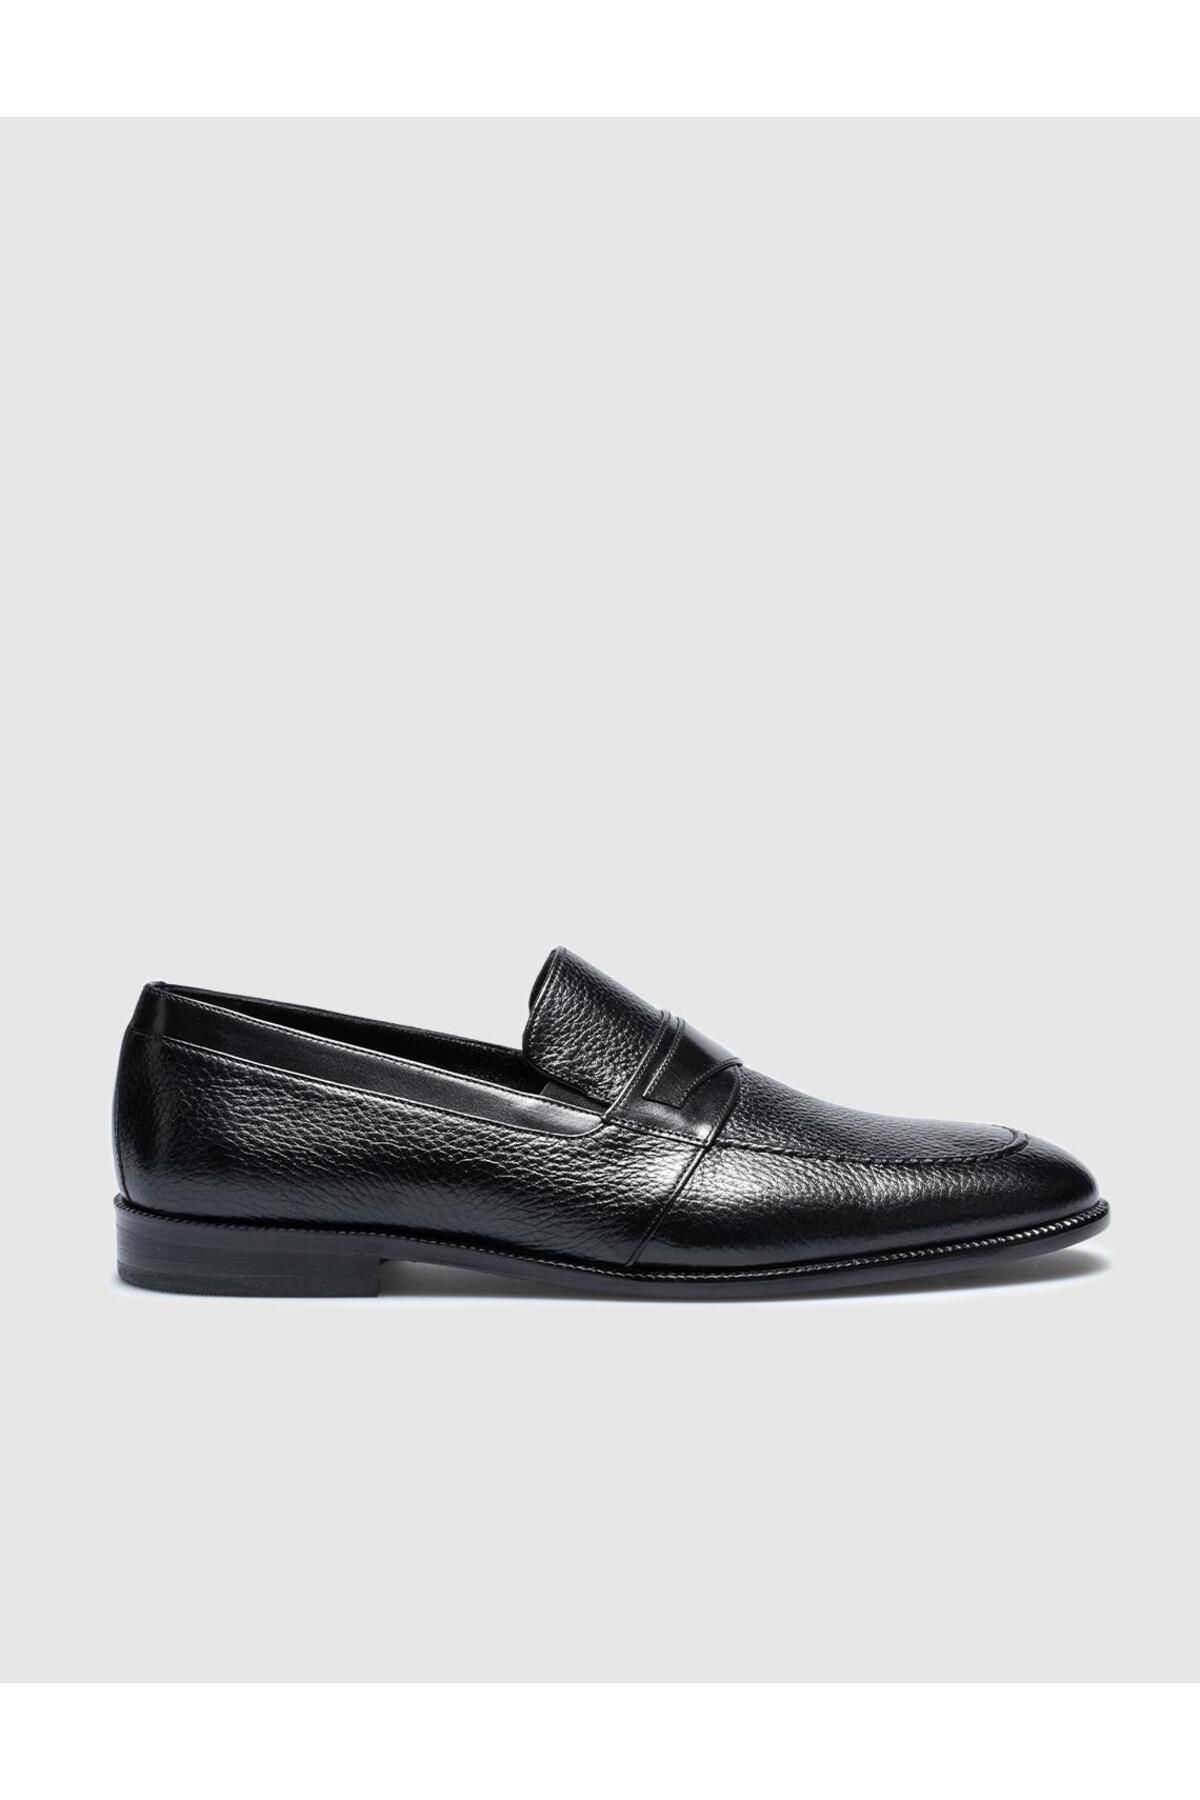 Cabani Hakiki Deri Siyah Kemerli Erkek Klasik Ayakkabı